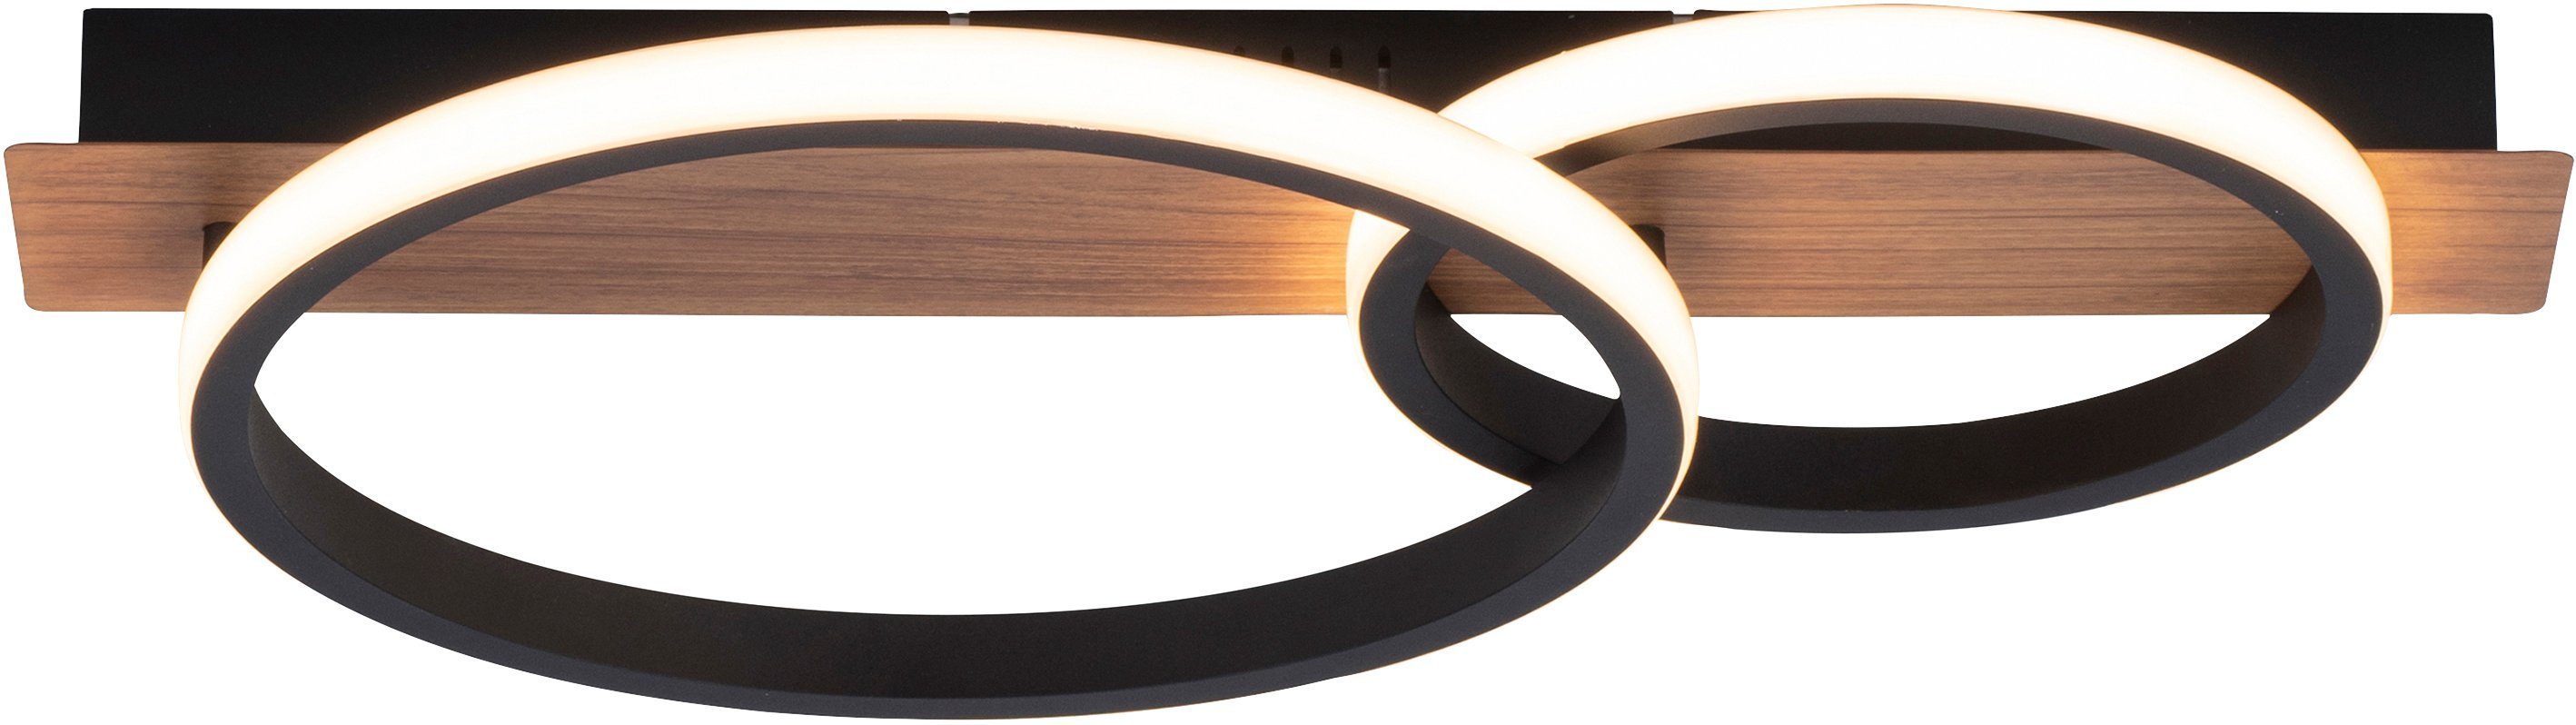 Holz affaire Licht, fest Molay, Deckenlampe Warmweiß, Deckenleuchte integriert, LED Dekor LED Home warmweißes